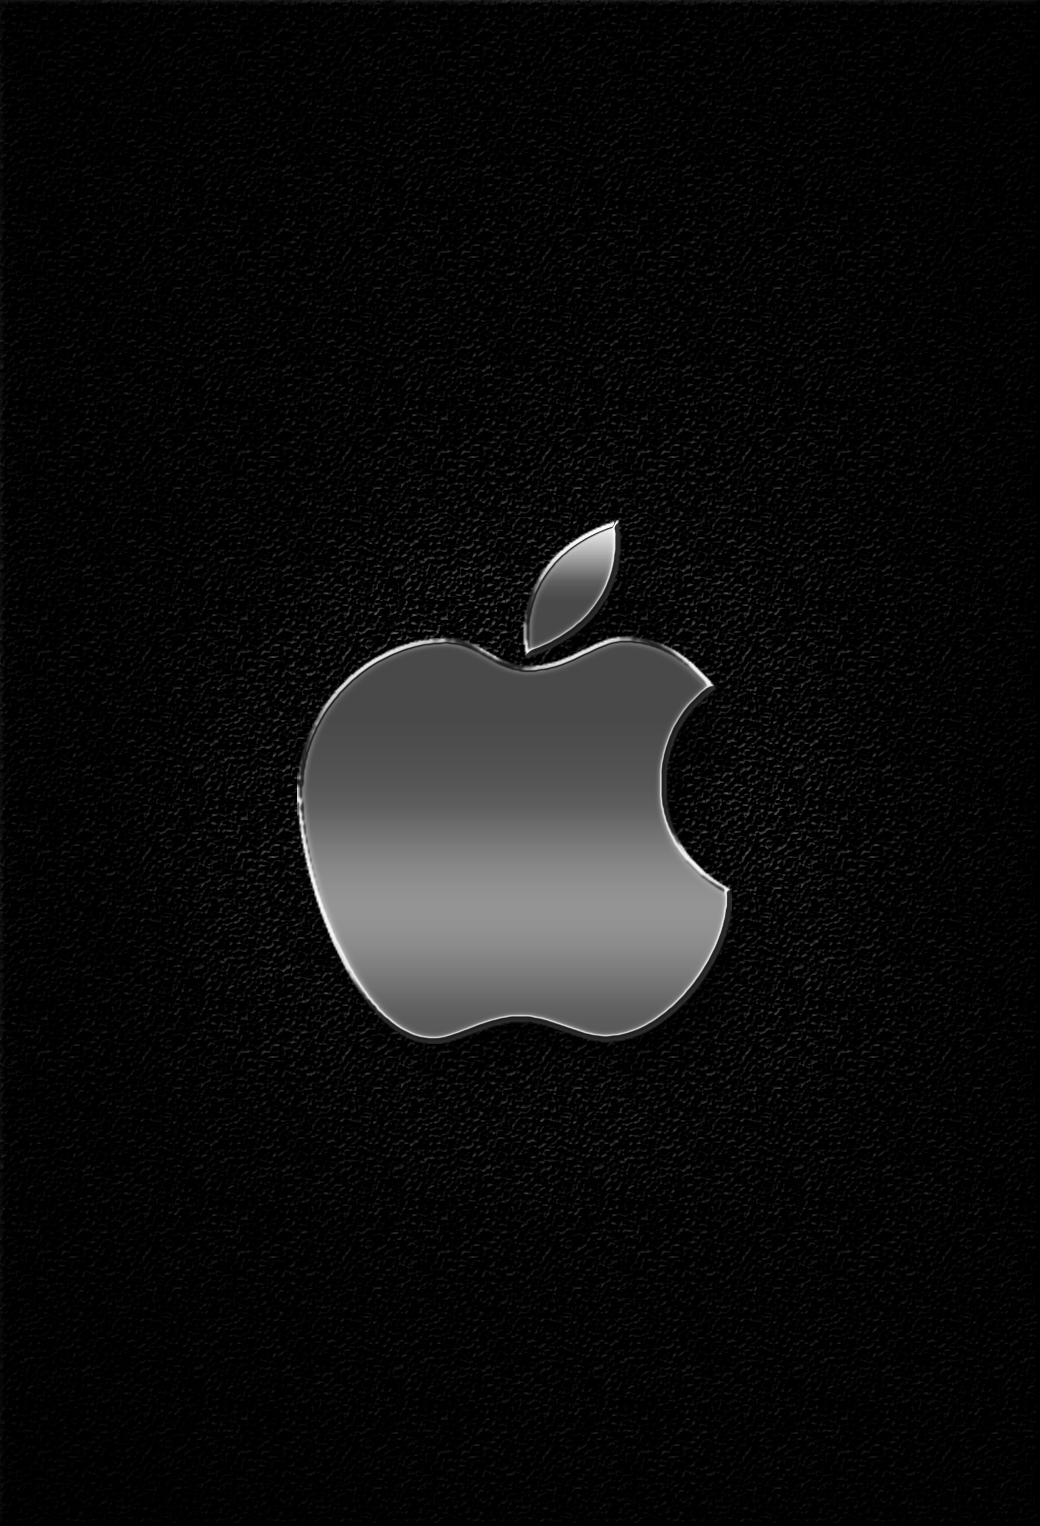 Apple ロゴ 148 Iphone壁紙 すべて1136 X 640pxサイズ